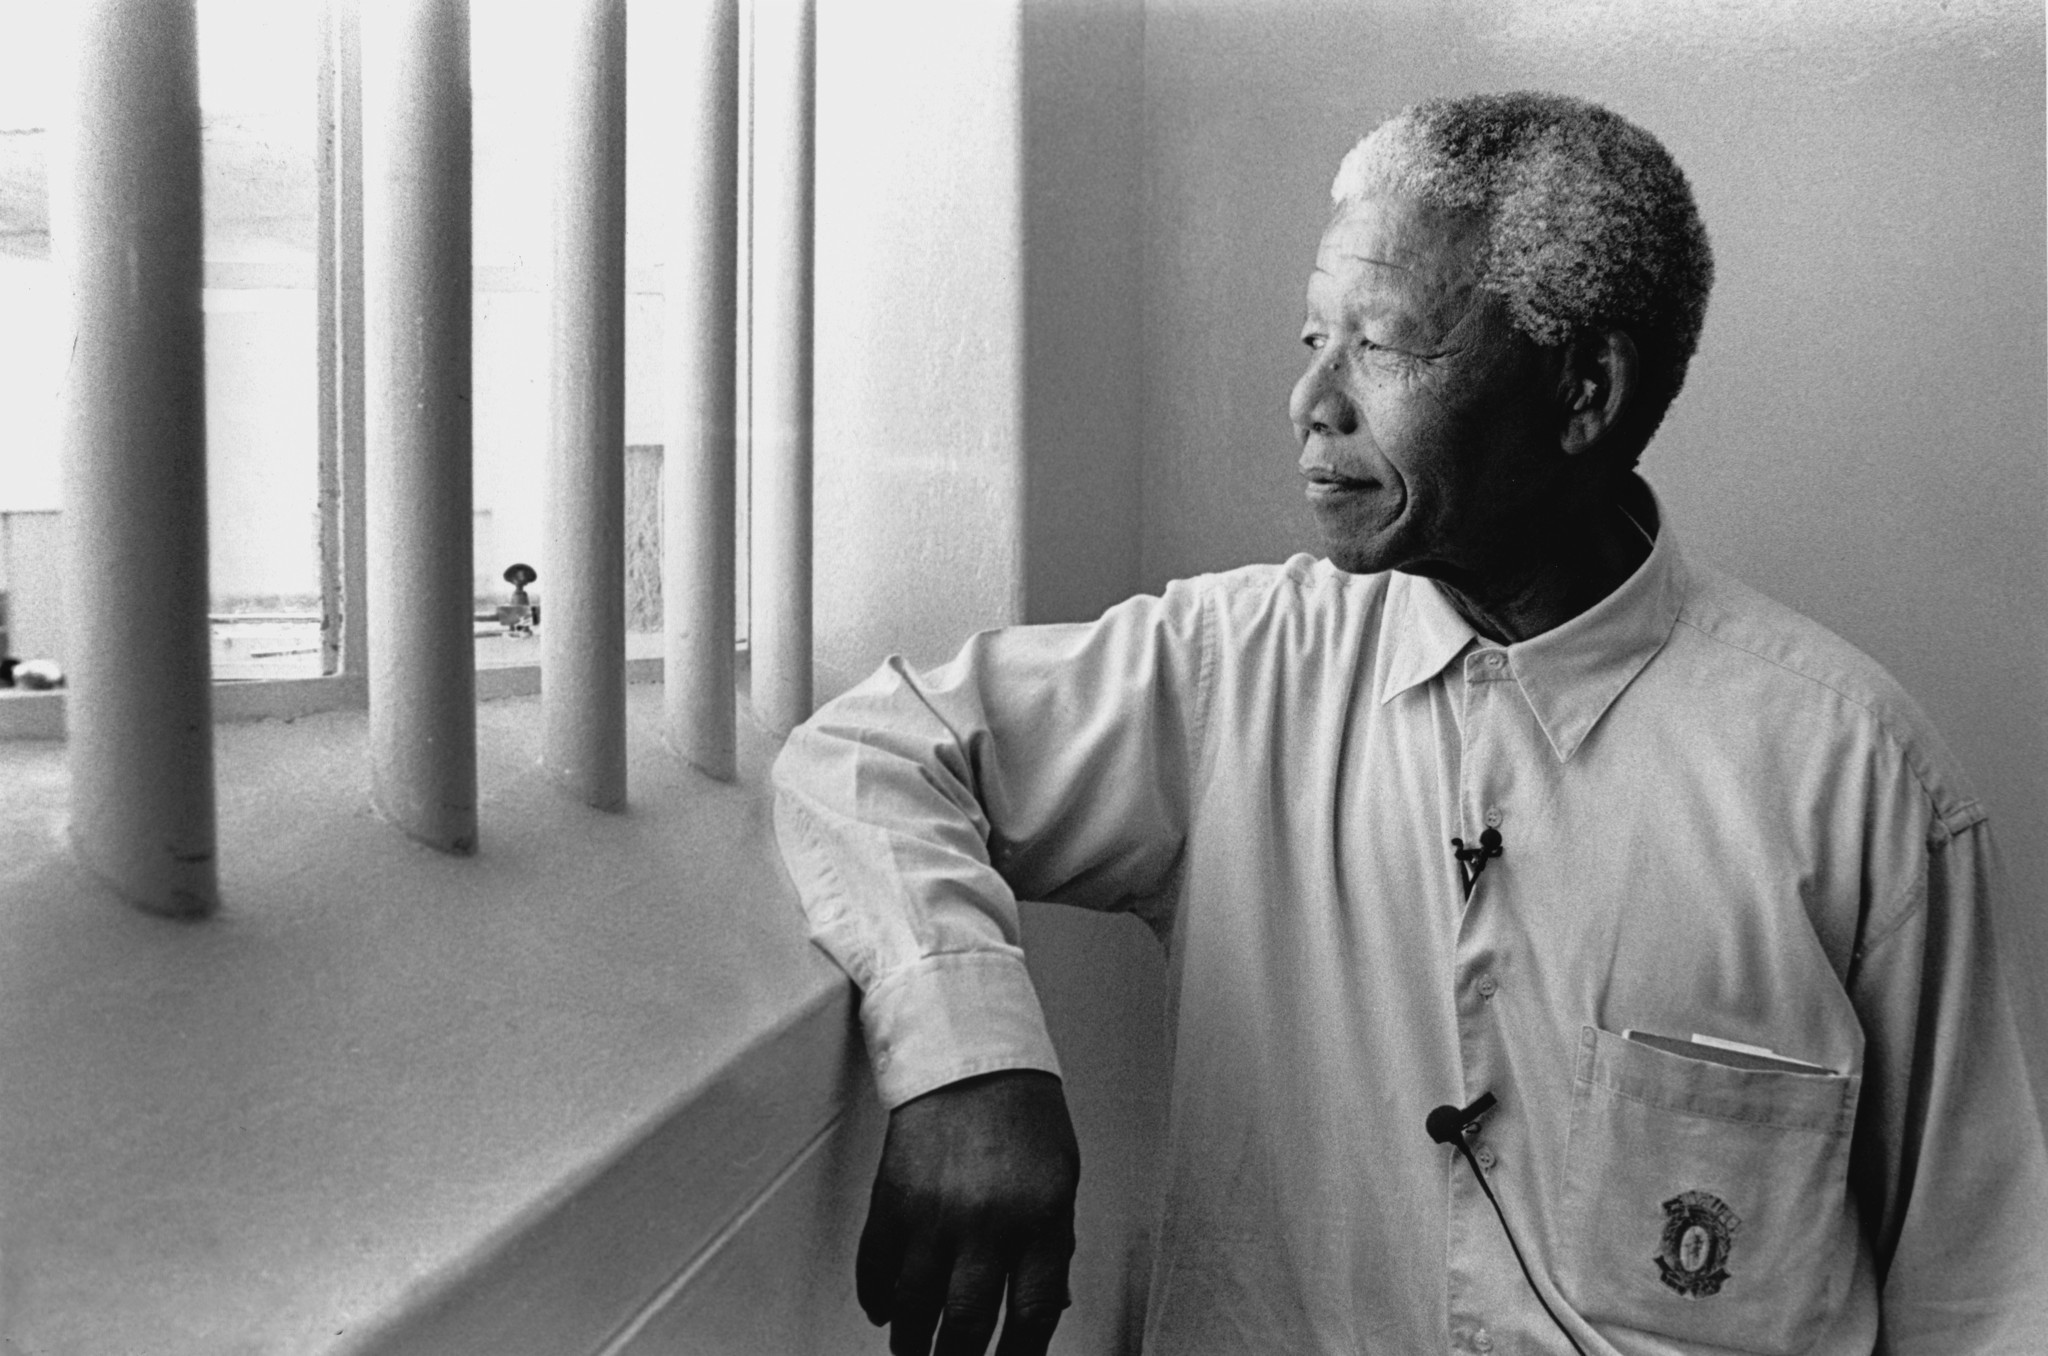 Nelson Mandela in prison. Photo by Jürgen Schadeberg.